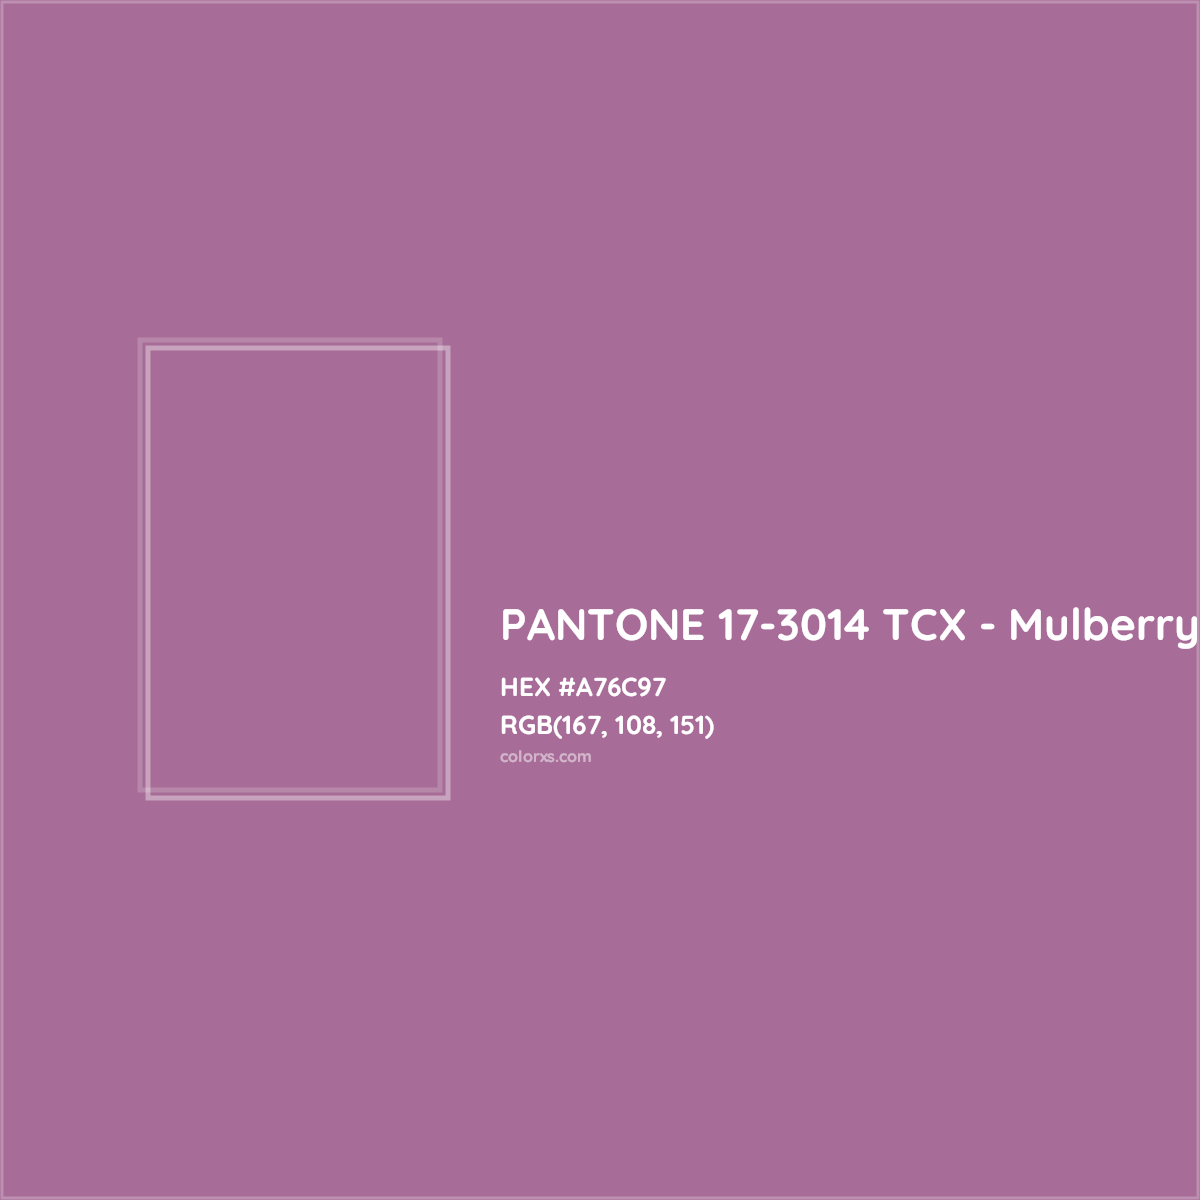 HEX #A76C97 PANTONE 17-3014 TCX - Mulberry CMS Pantone TCX - Color Code